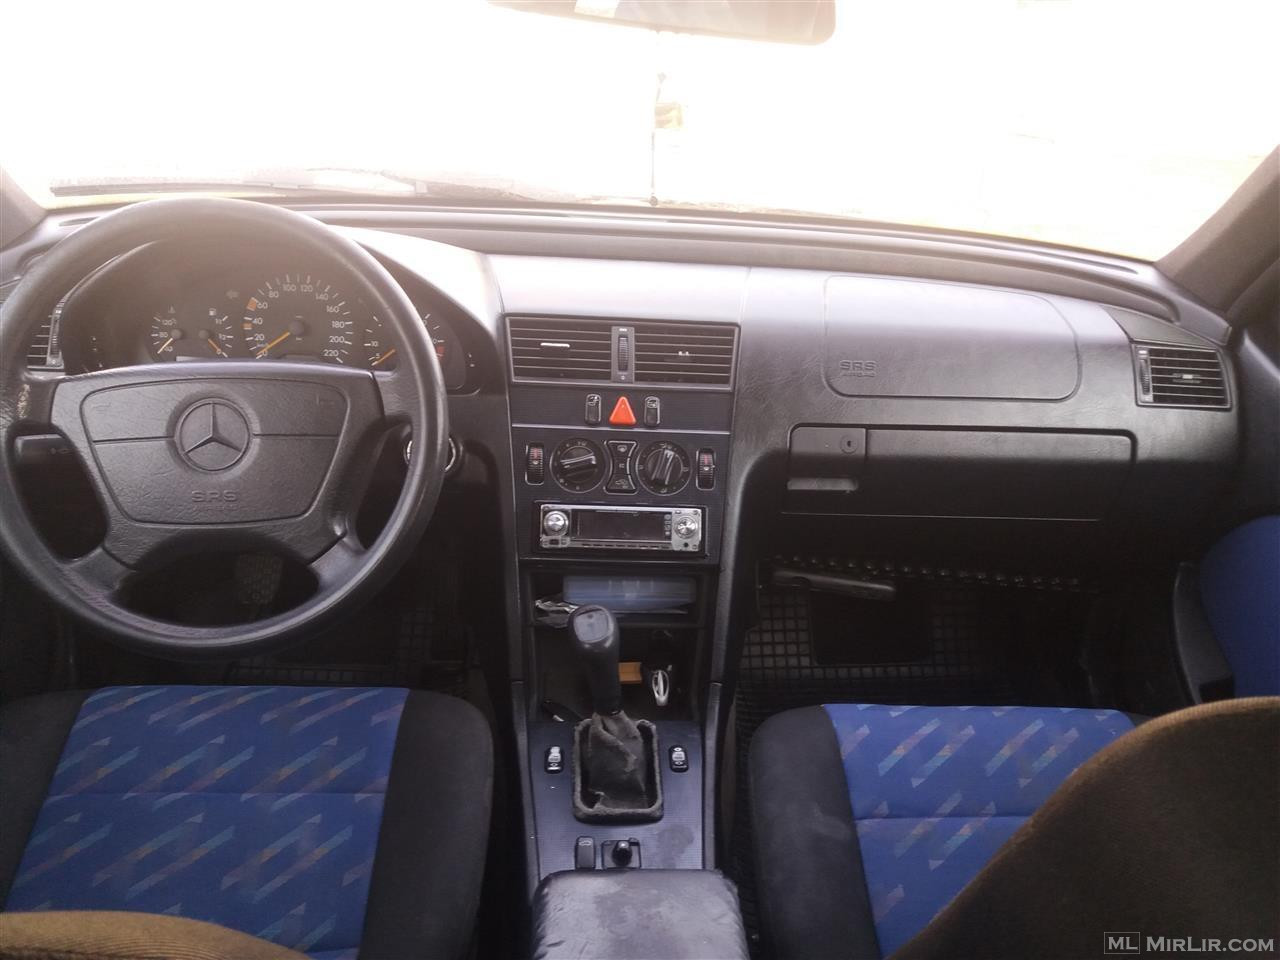 Mercedes c220